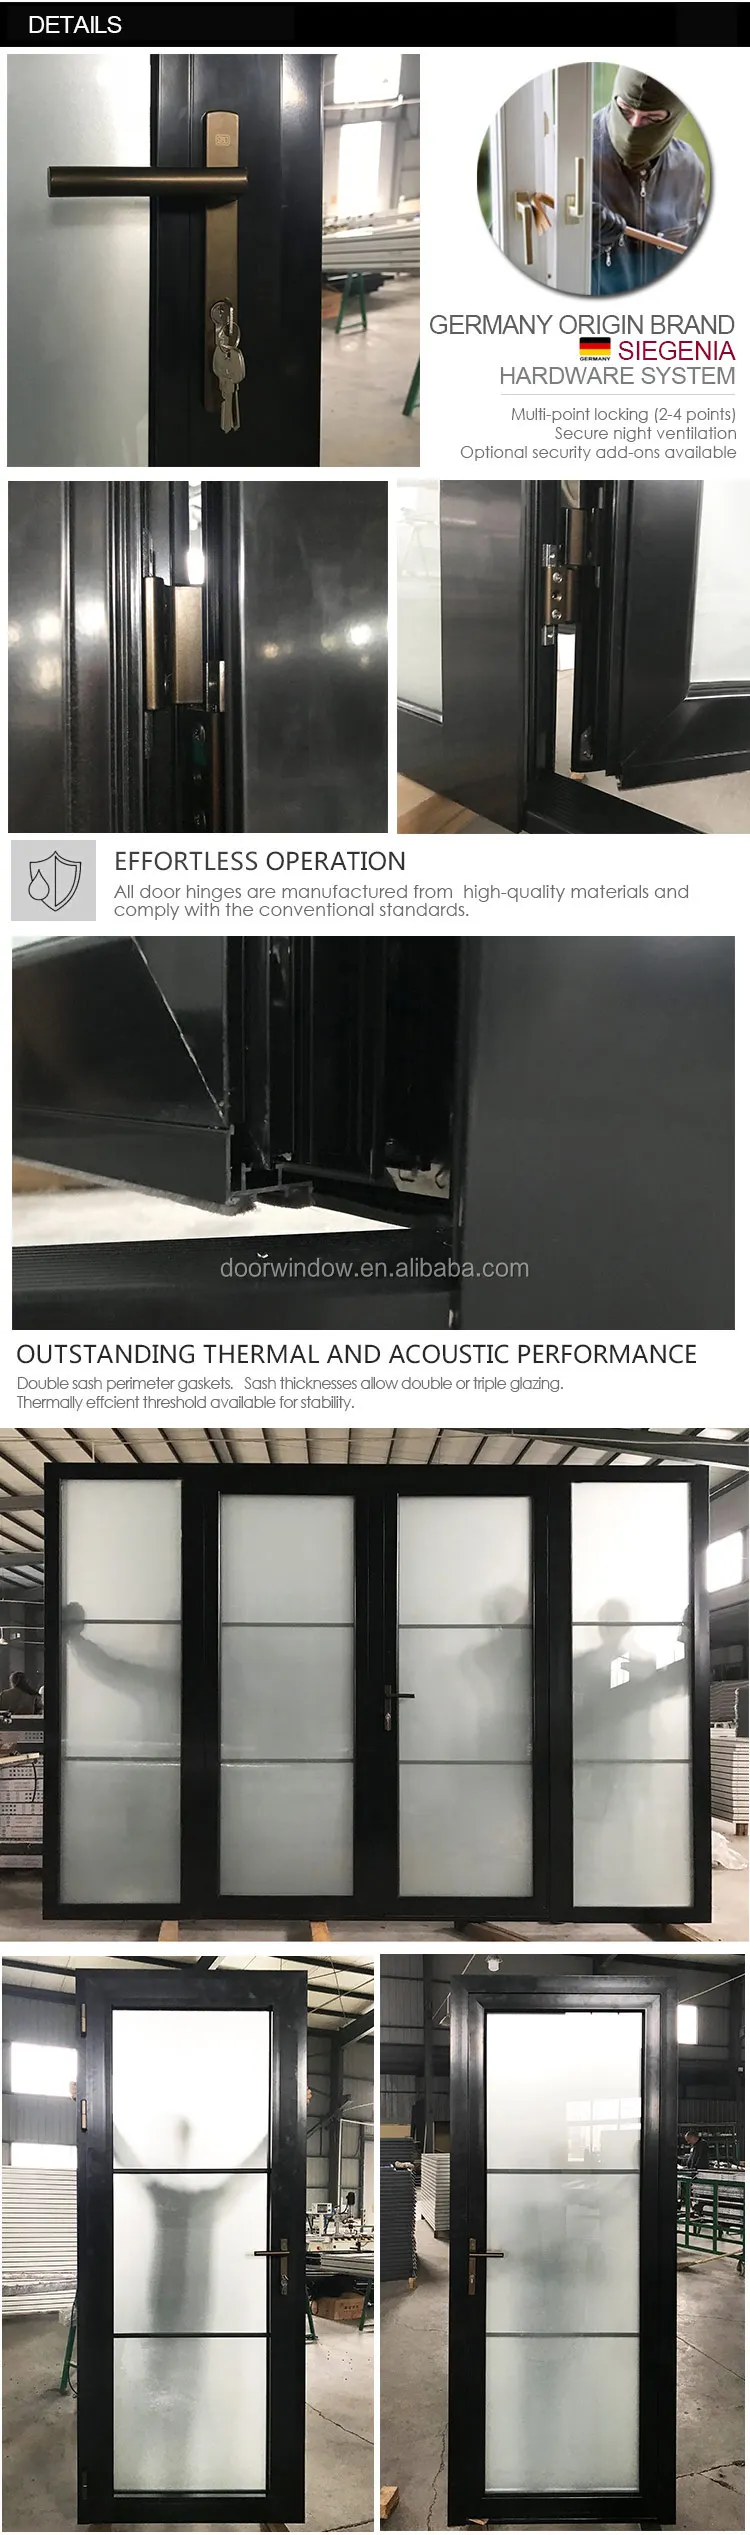 Hot selling product Factory direct casement door Entry Doors aluminum windows and doors